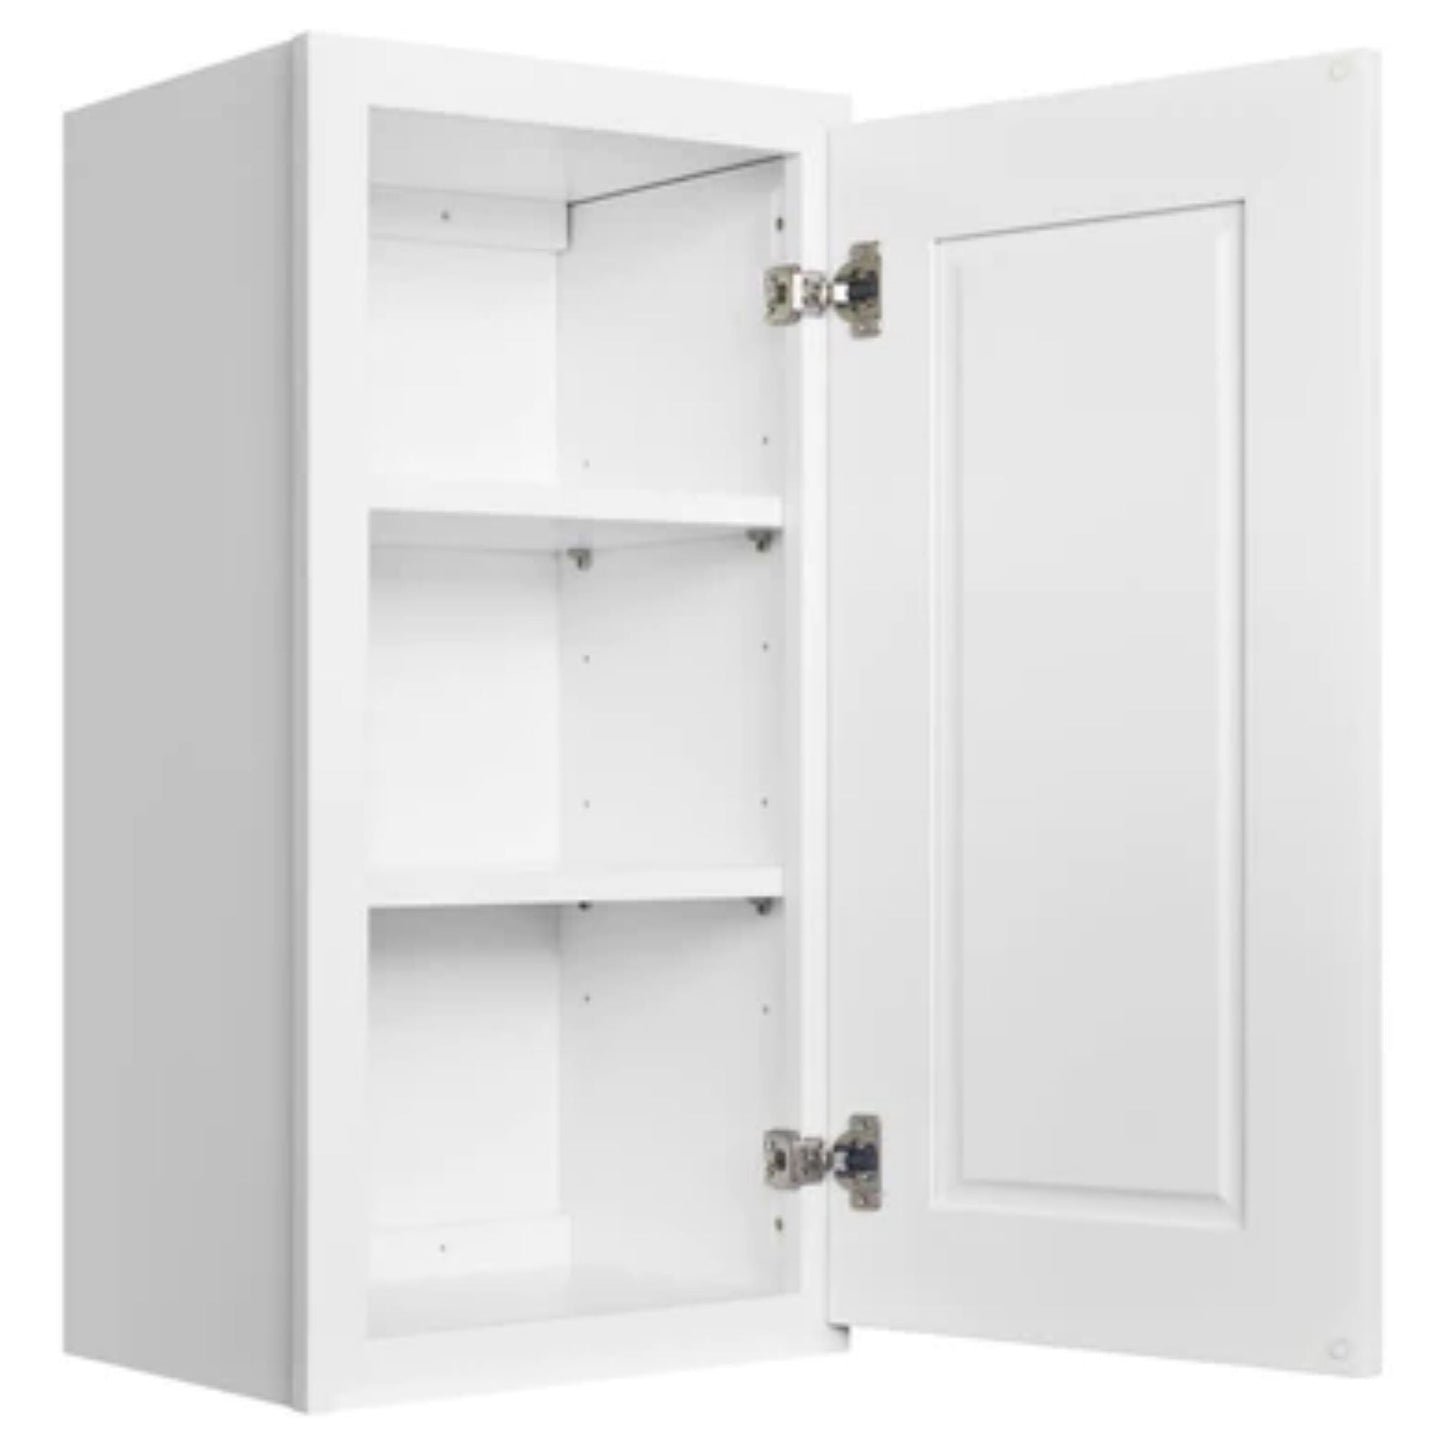 LessCare 27" x 36" x 12" Alpina White Wall Kitchen Cabinet - W2436